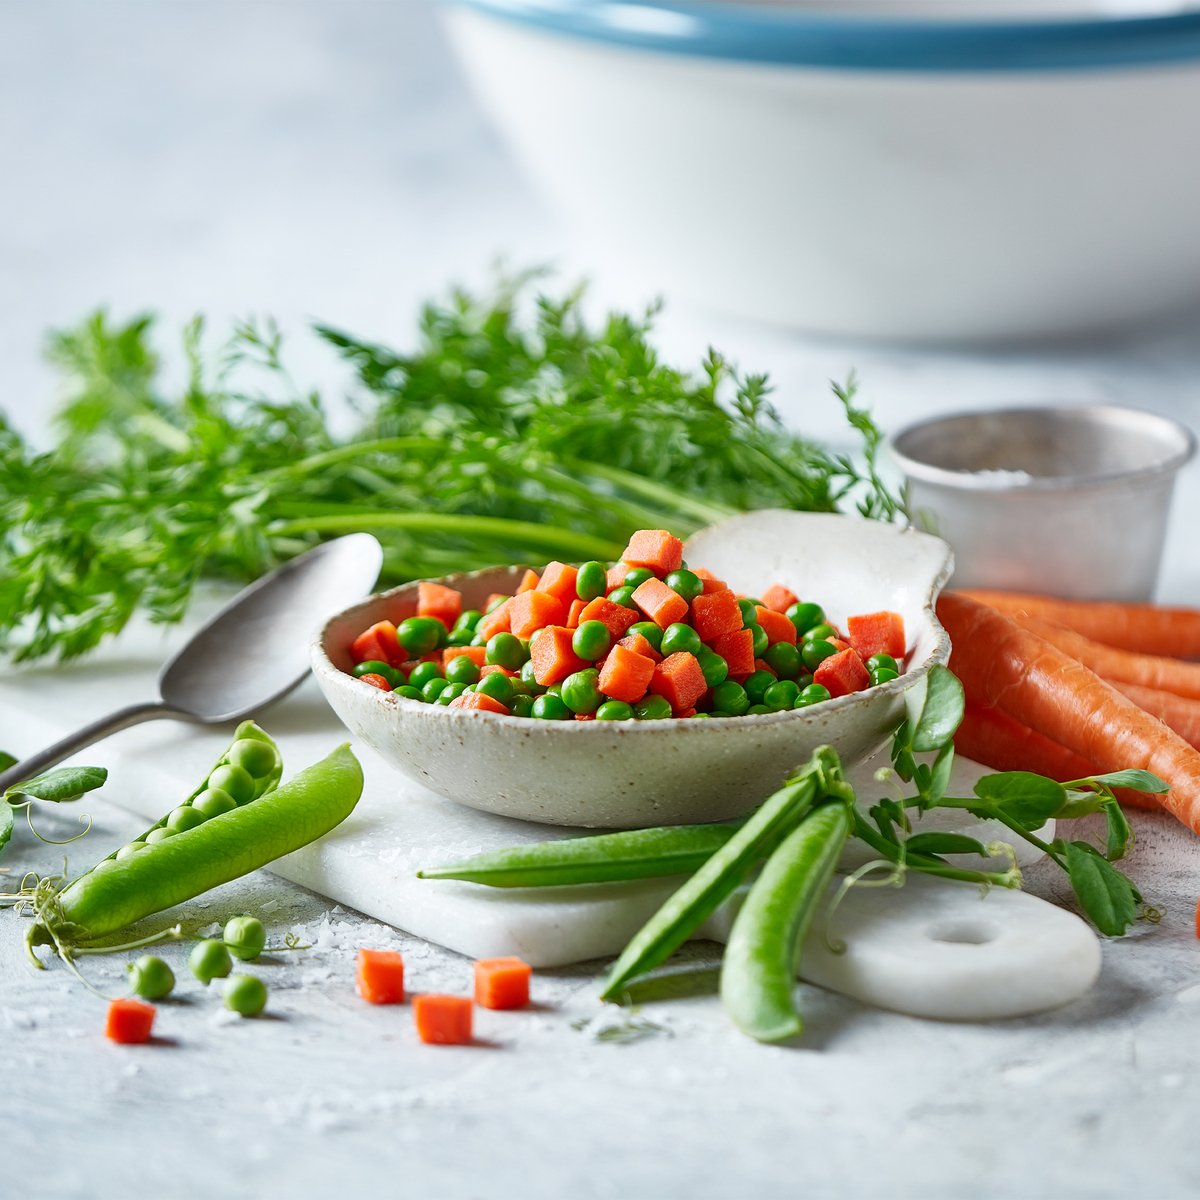 Emborg Peas & Carrots 450 g